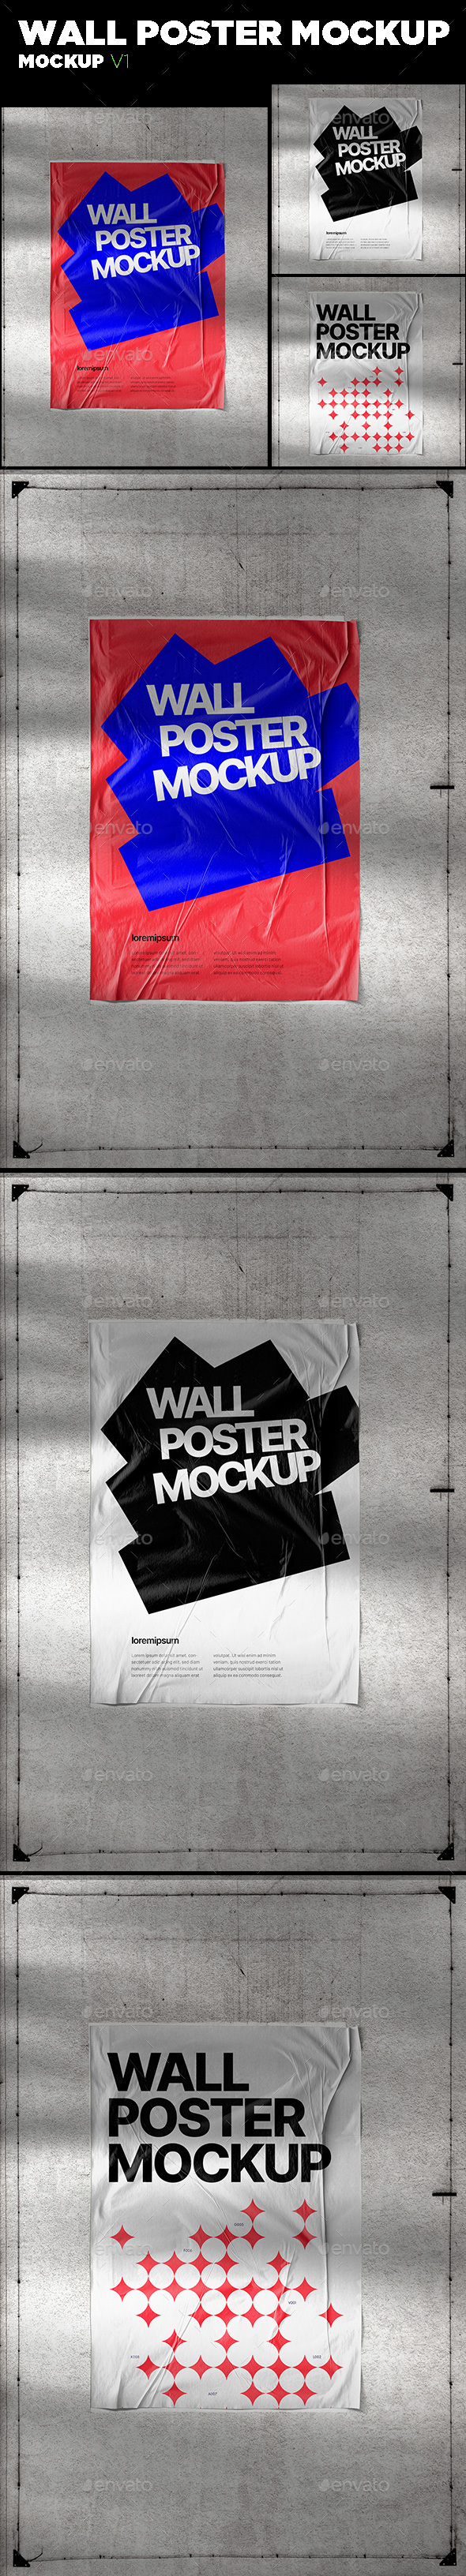 Wall Poster Mockup V1